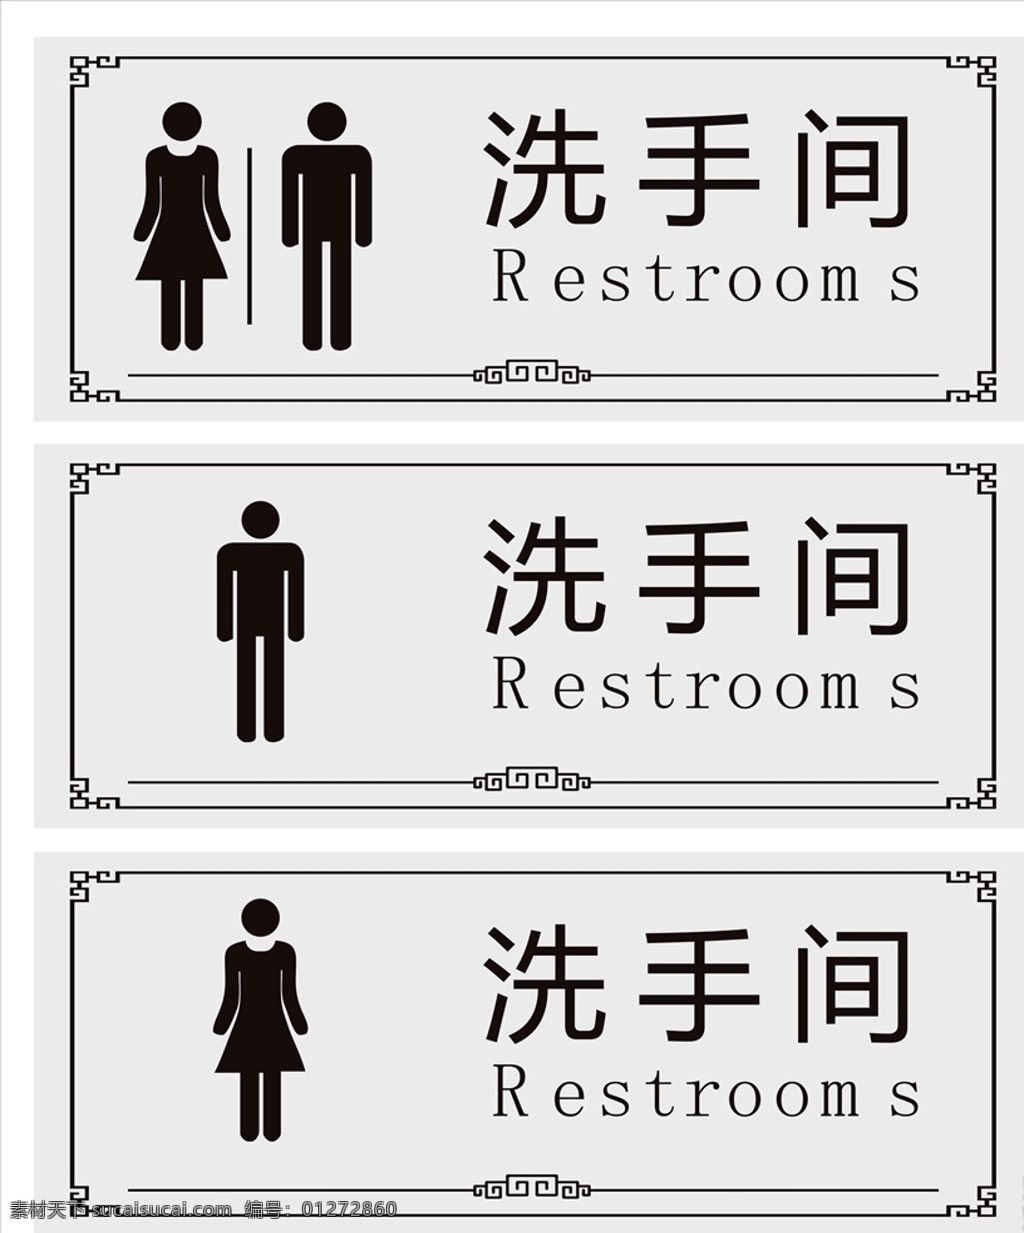 洗手间标识牌 洗手间标志 洗手间门牌 卫生间门牌 卫生间标识牌 卫生间标志 标识牌 分层